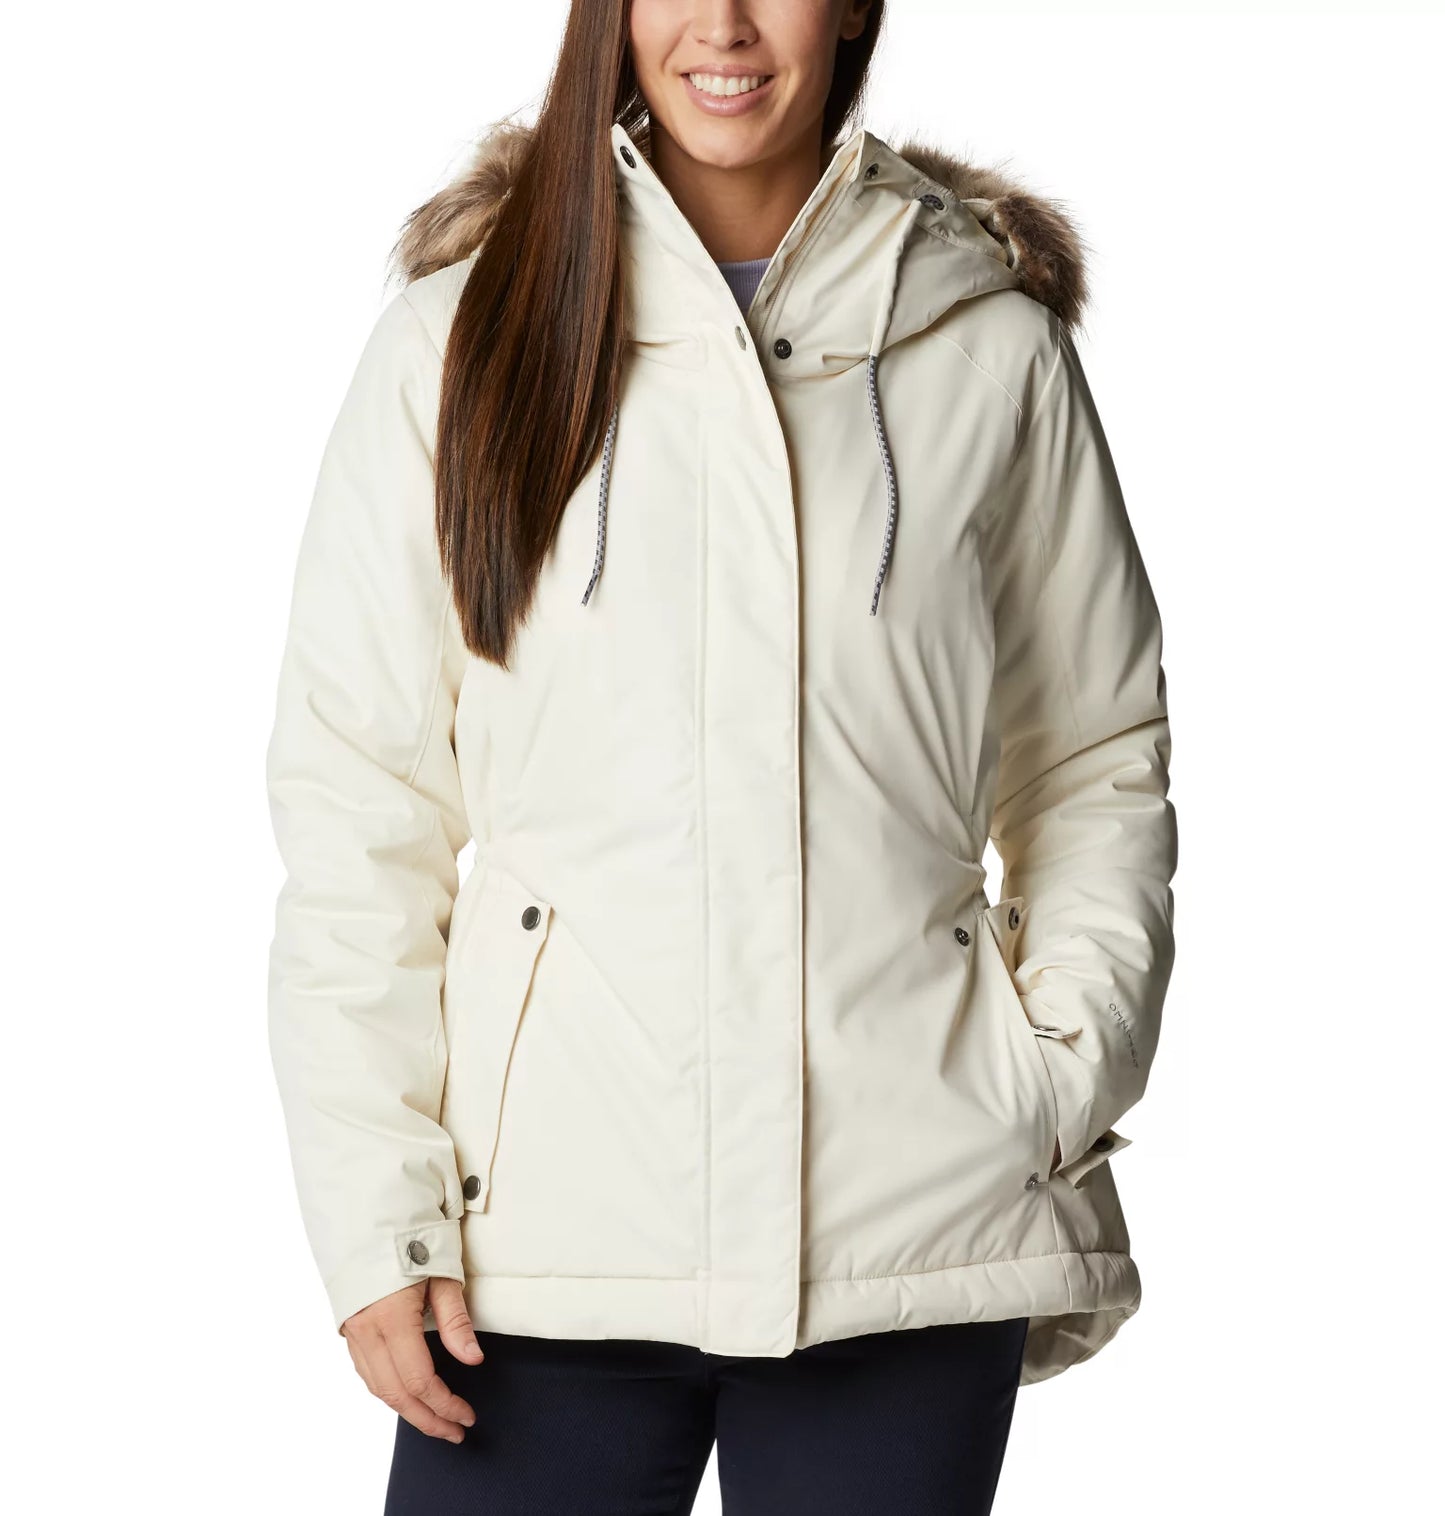 Women's Sherpa Ruby Falls™ Novelty Jacket